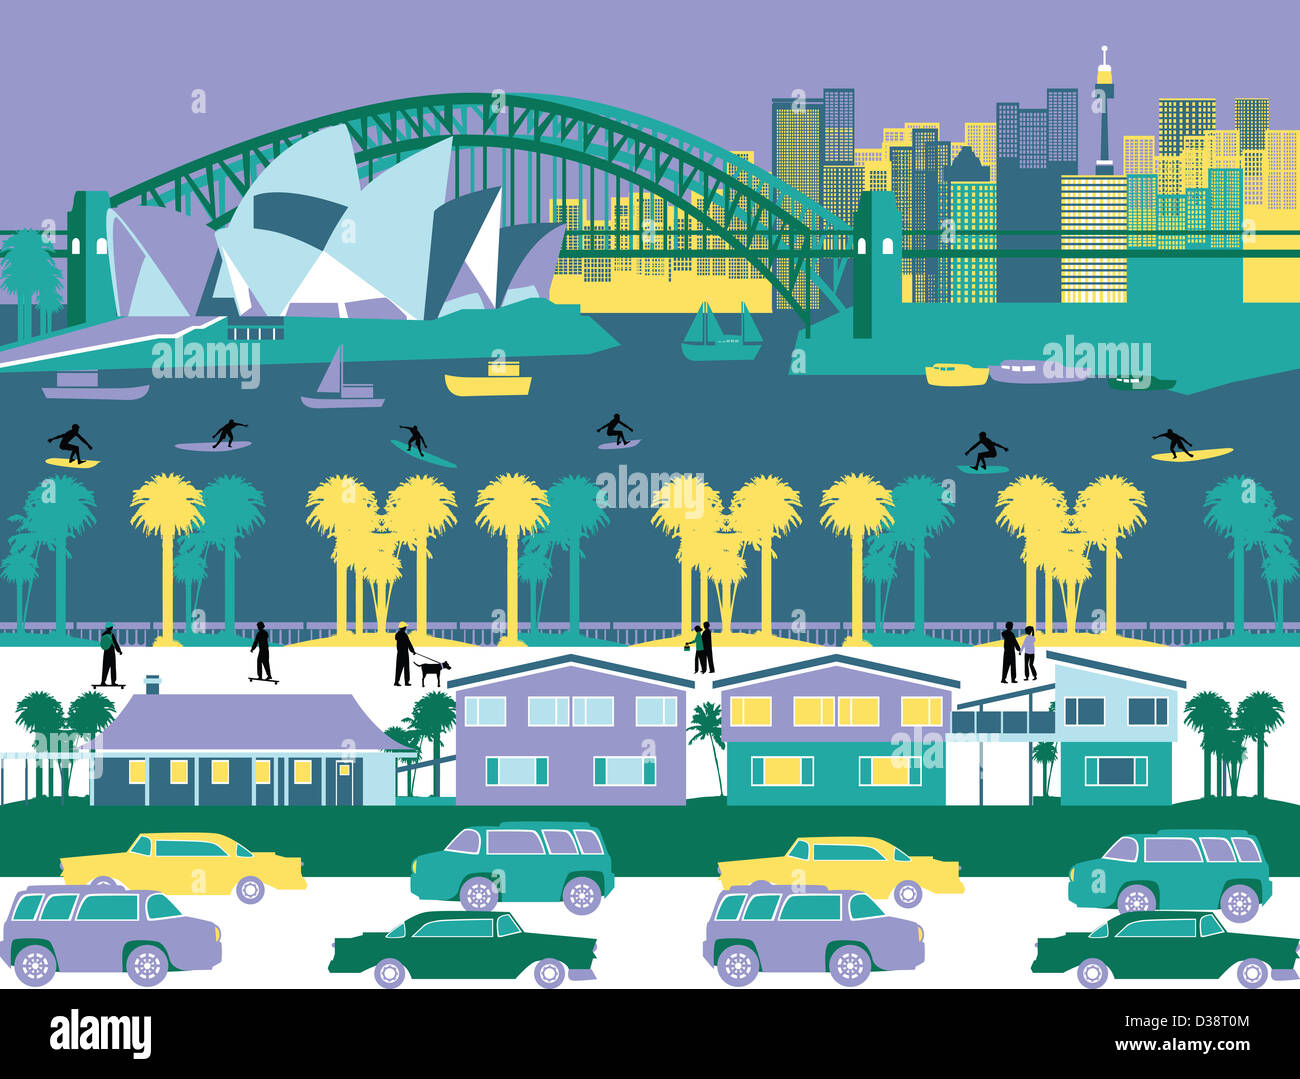 Opernhaus und eine Brücke in einer Stadt, Sydney Opera House, Sydney Harbour Bridge, Sydney, New South Wales, Australien Stockfoto